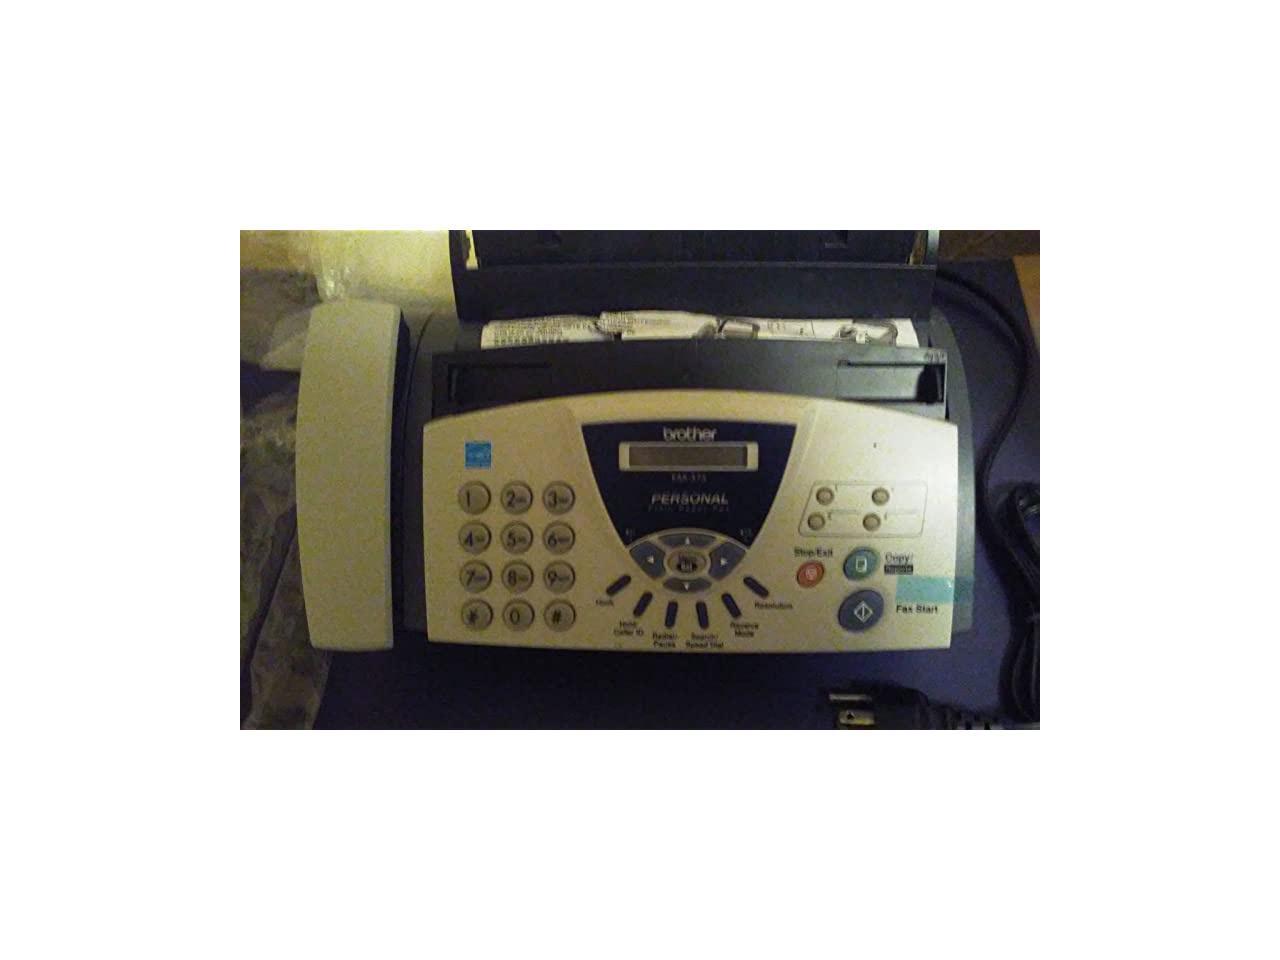 Fax Machine FAX575 